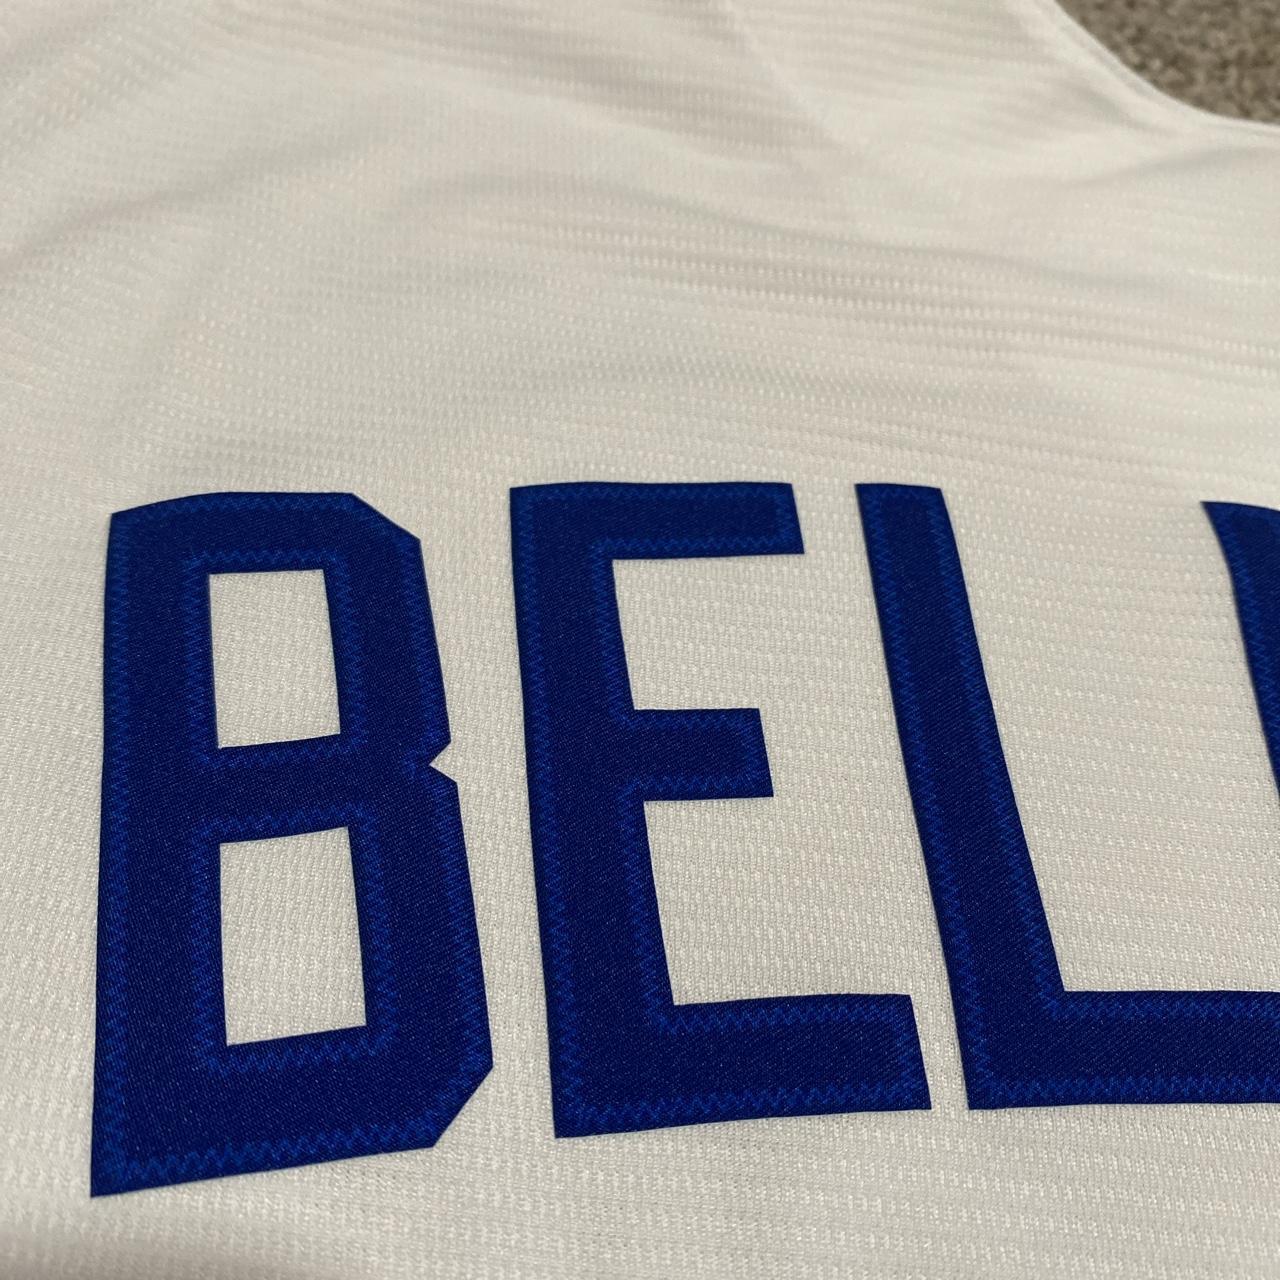 Nike Cody Bellinger Dodgers Jersey! looks brand - Depop